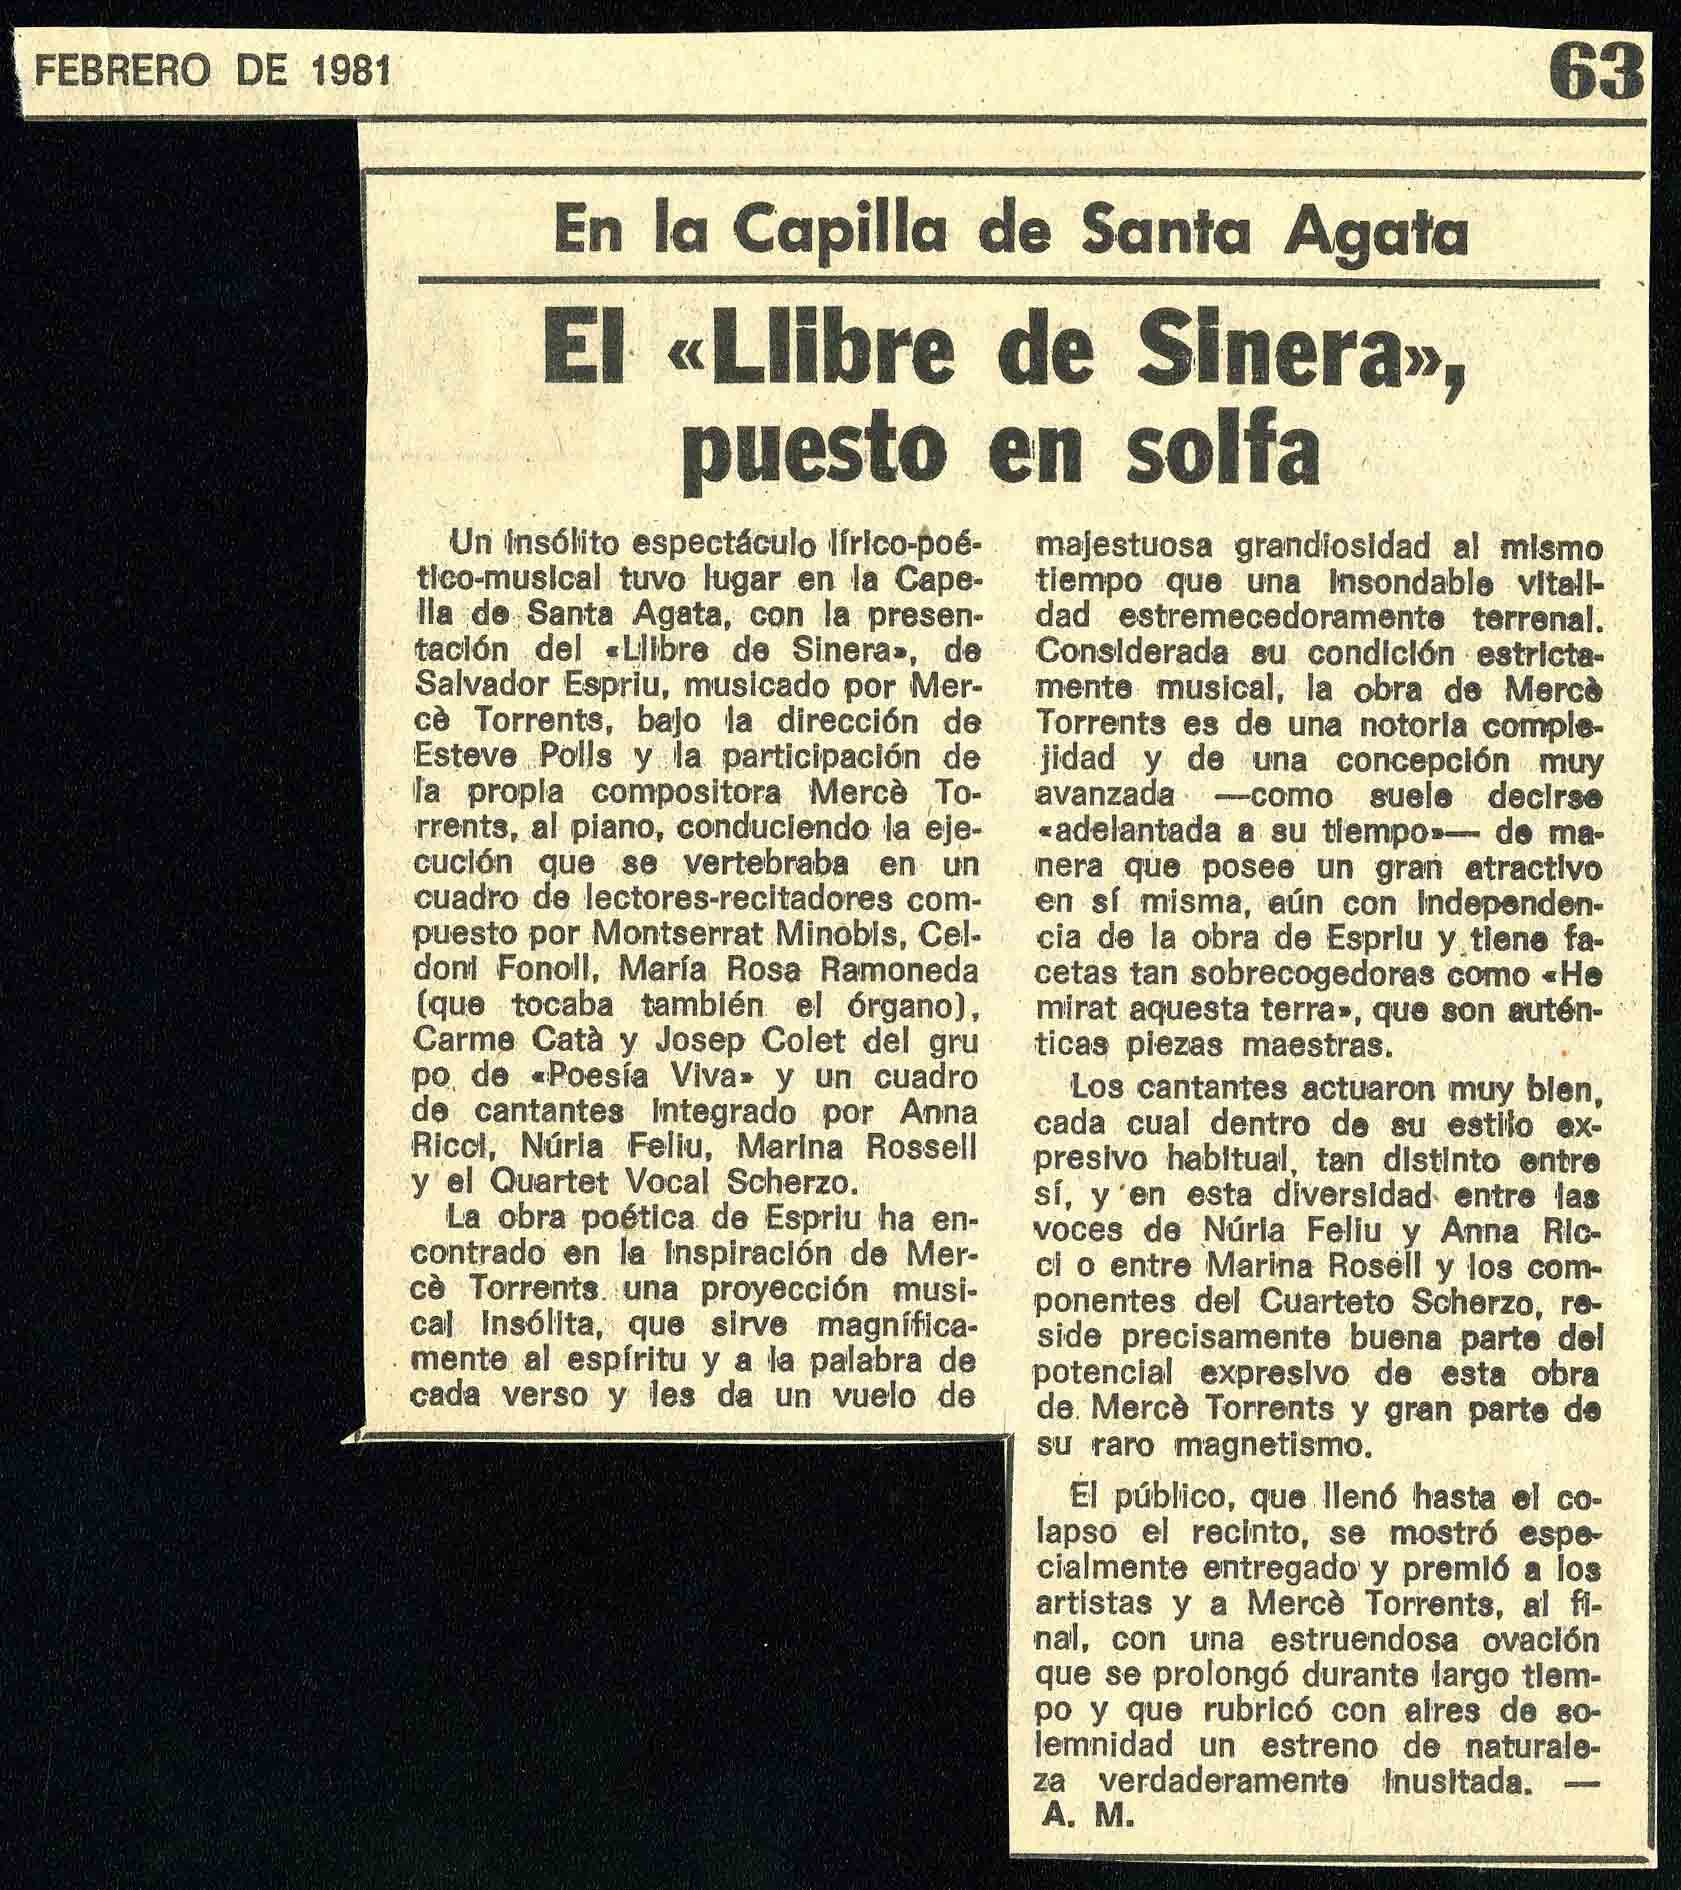 Crítica. A. M. La Vanguardia, 03/02/1981, p. 63